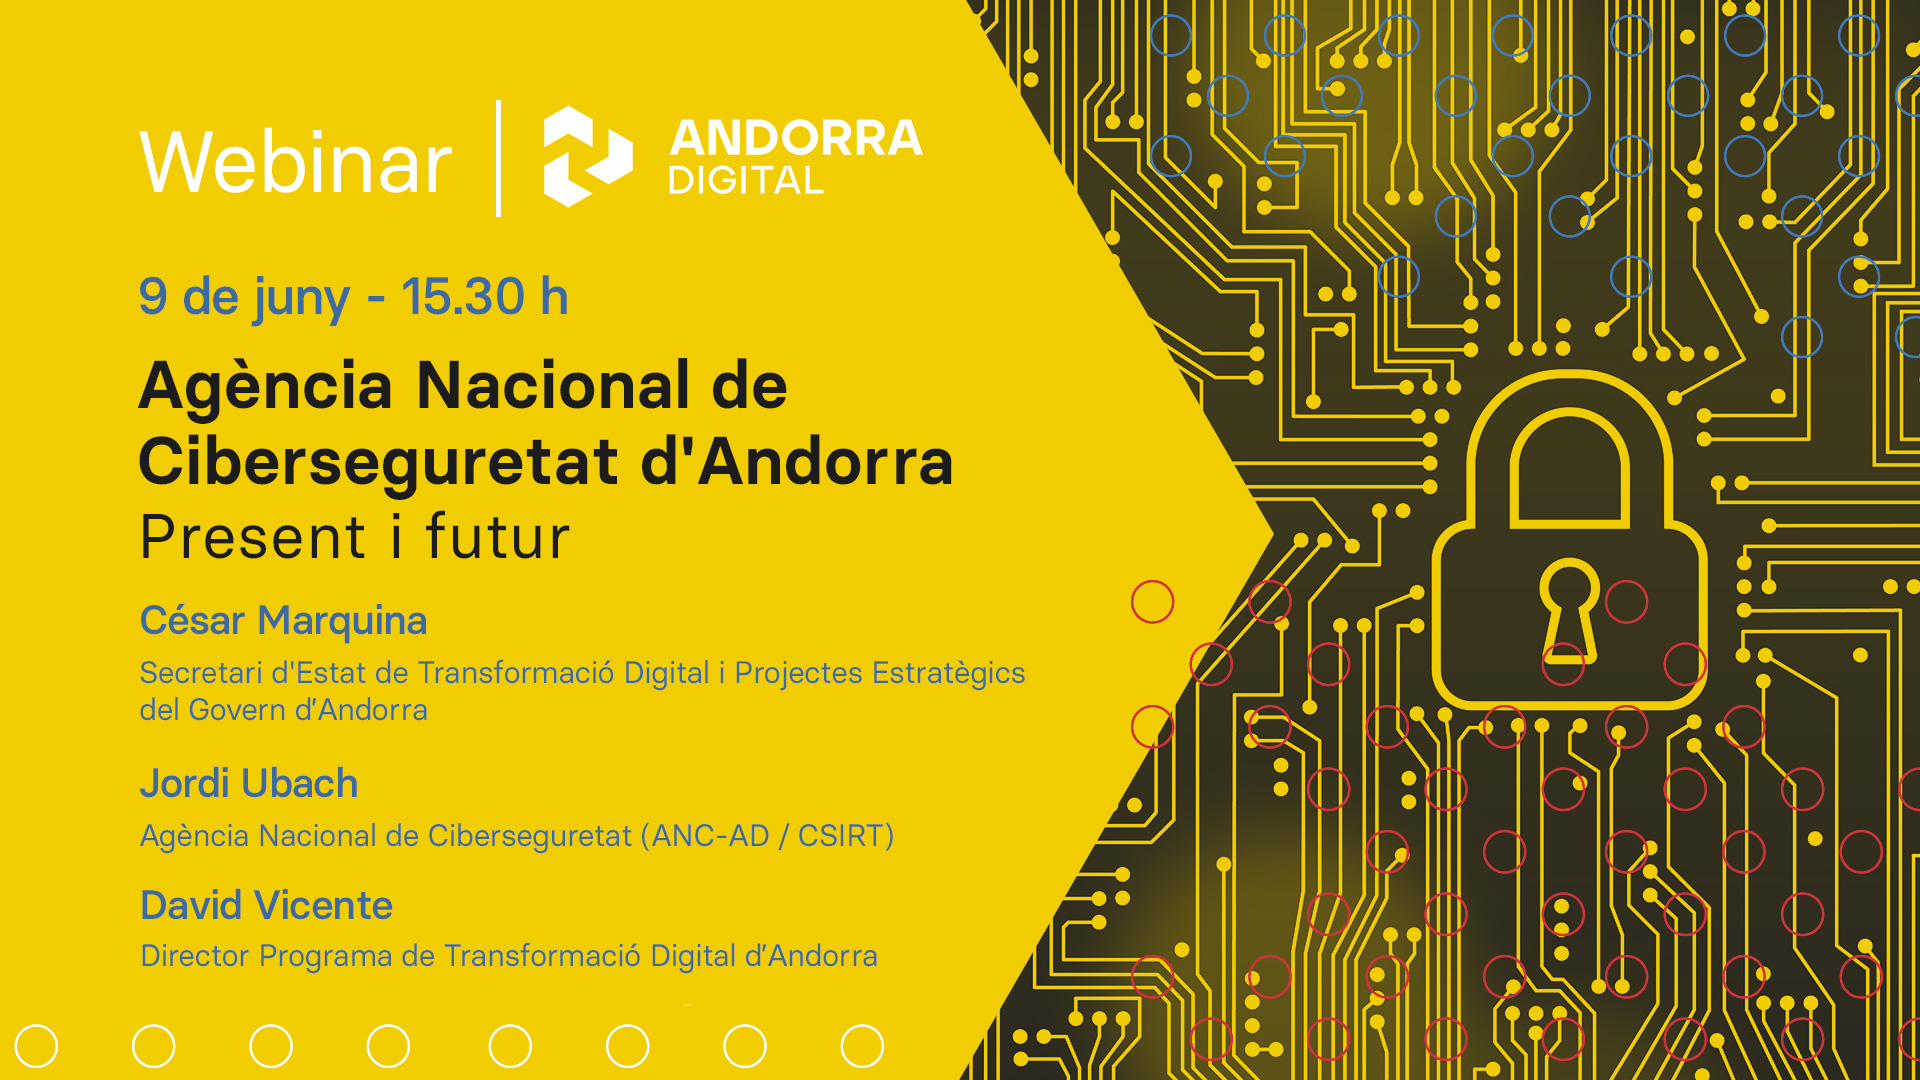 Webinar Andorra Digital - Presentacio